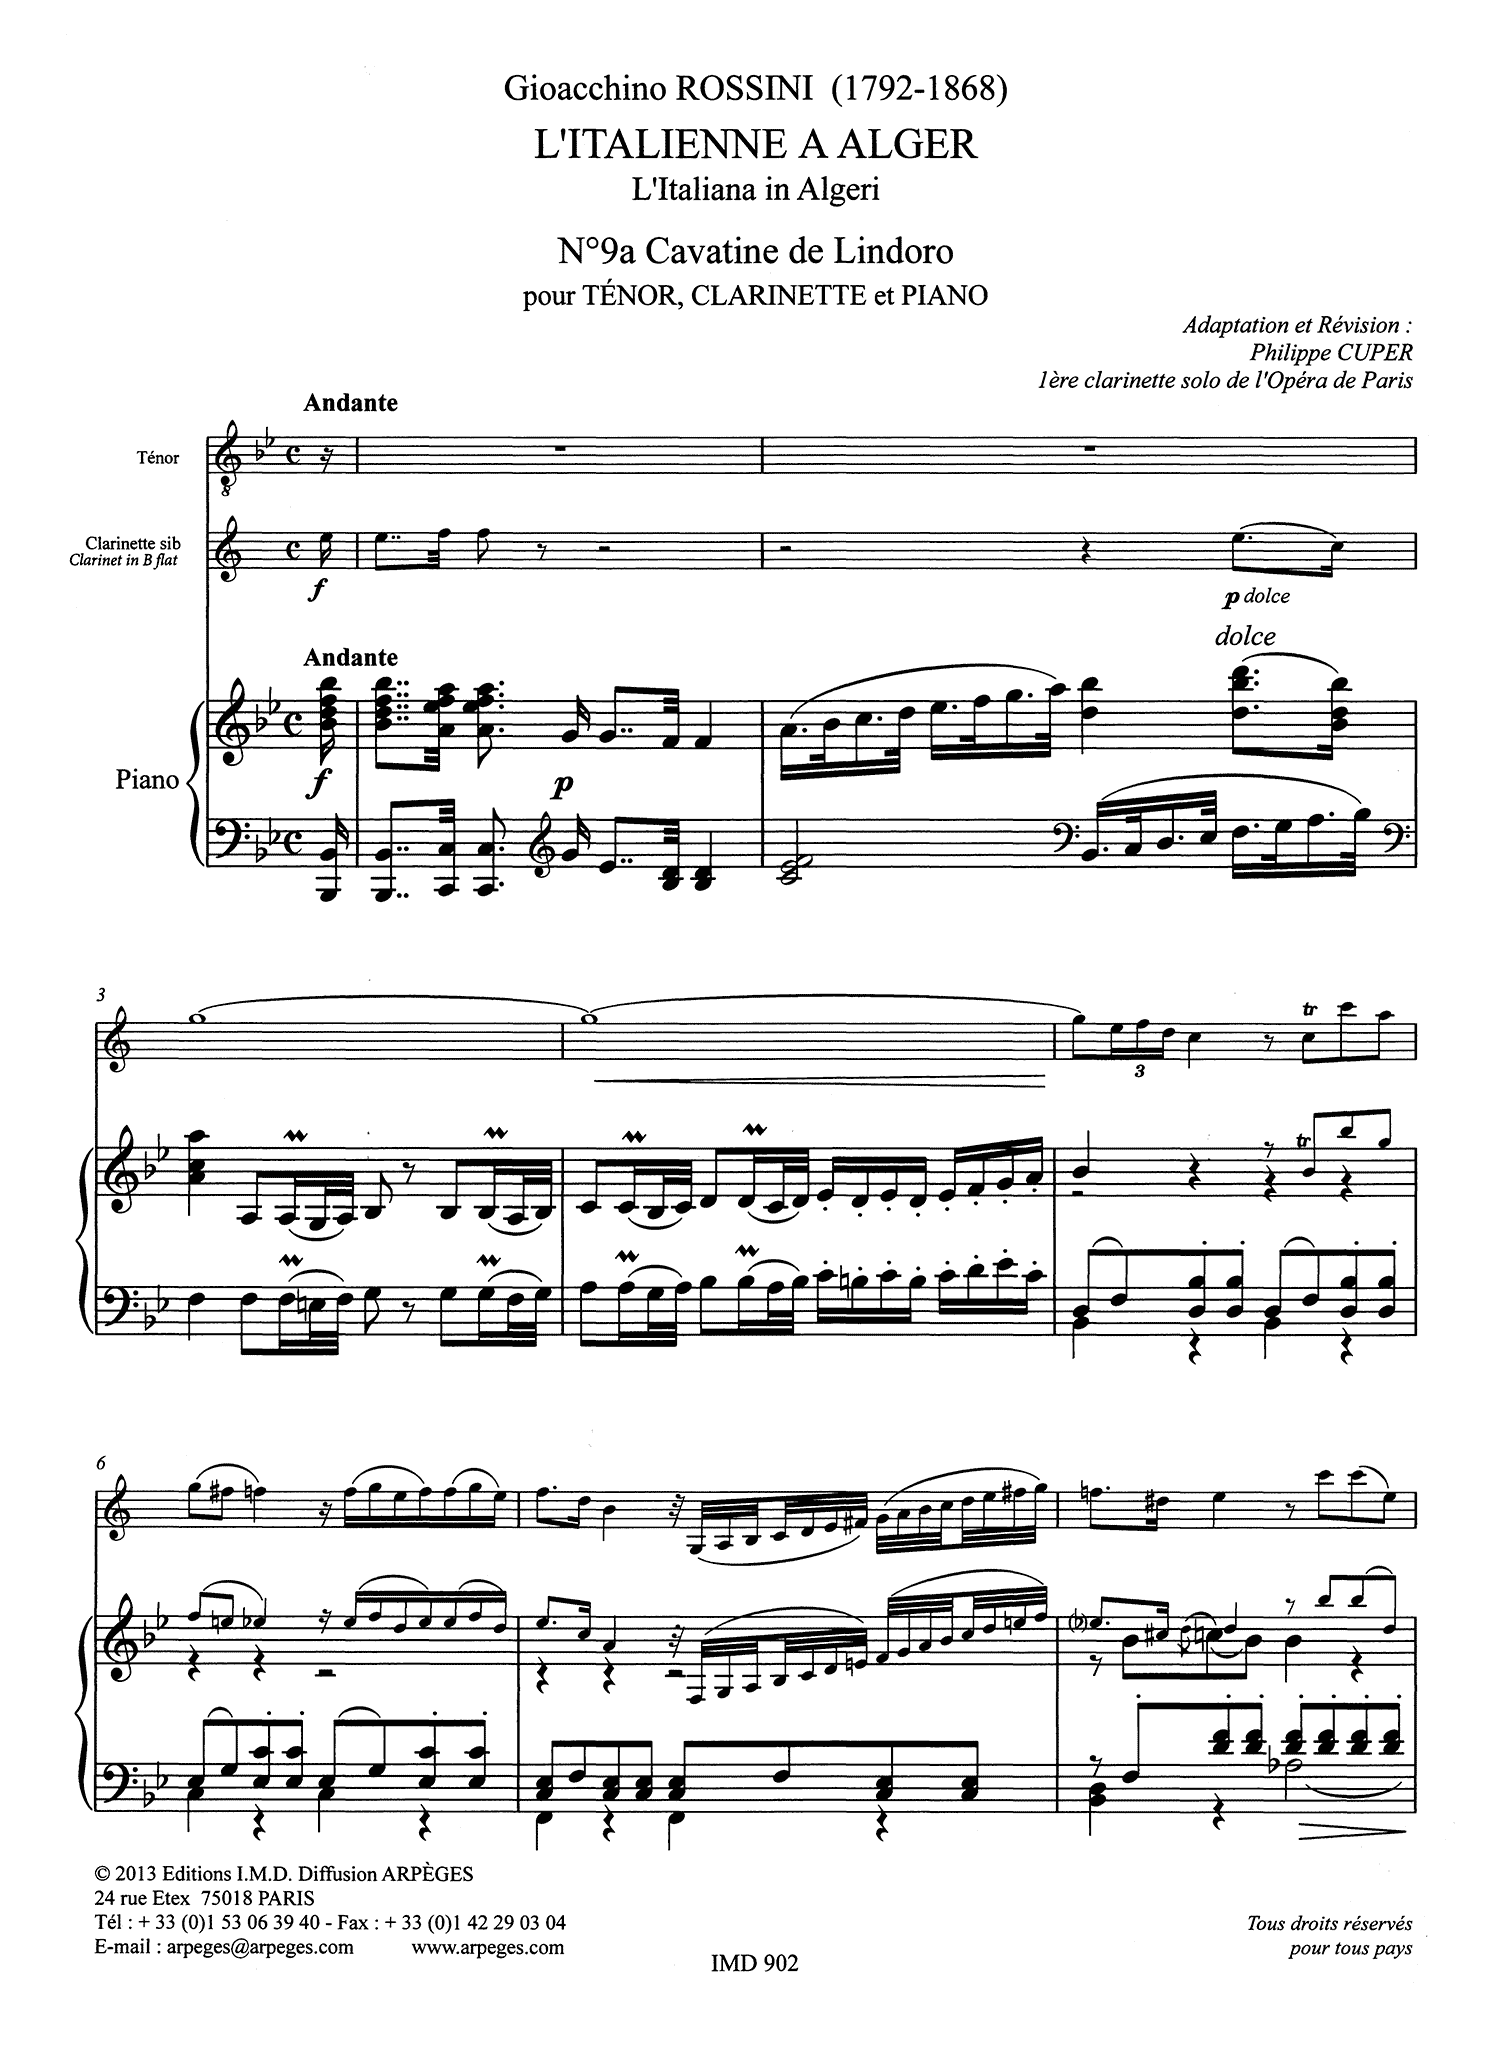 Rossini Concedi amor pietoso L'Italienne a Alger tenor clarinet piano arrangement score